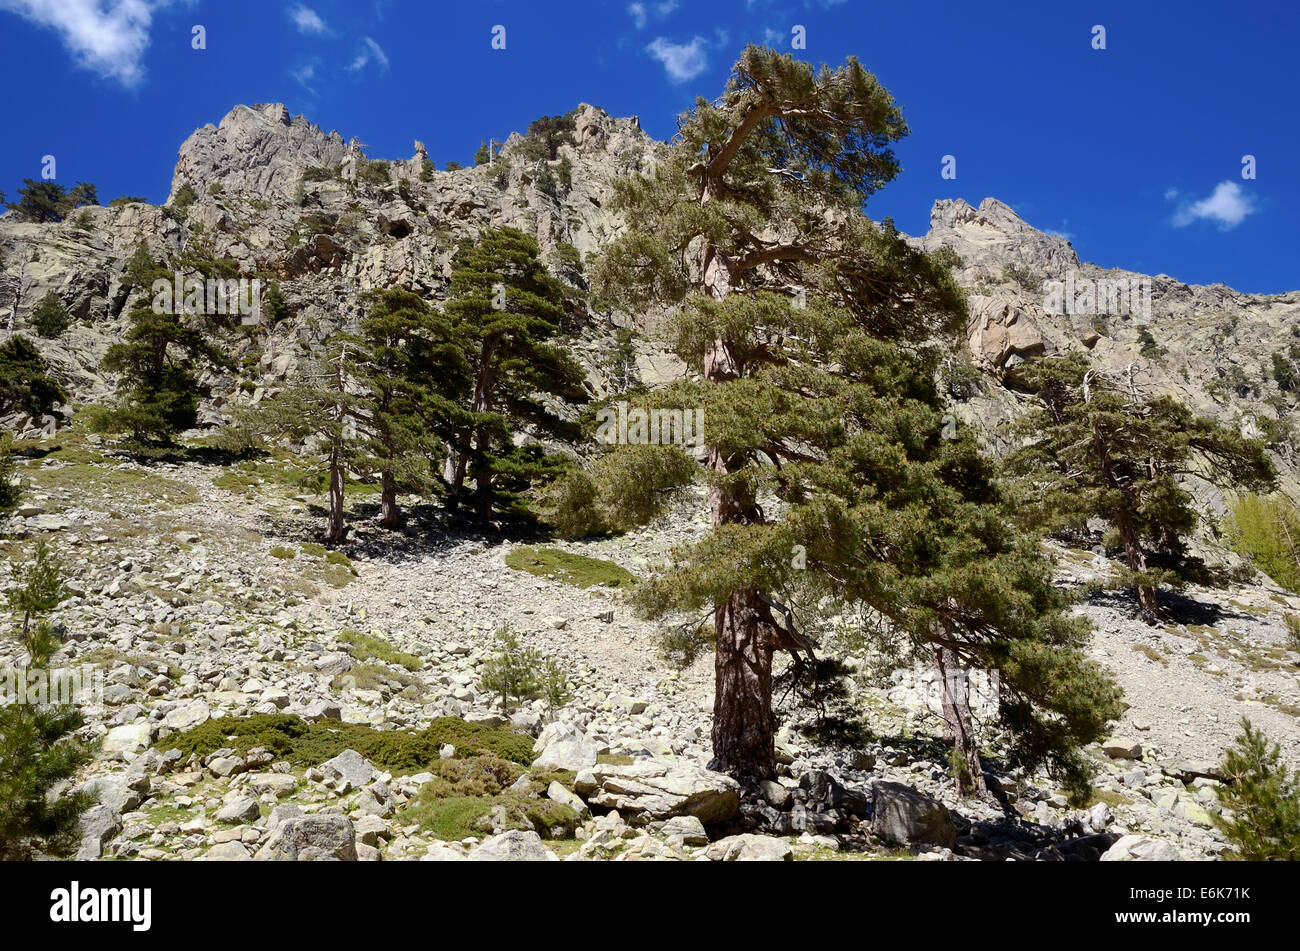 Pino corso (Pinus nigra subsp. Laricio) Valle de Restonica, Gargantas de la Restonica, Parc naturel régional de Corse Foto de stock